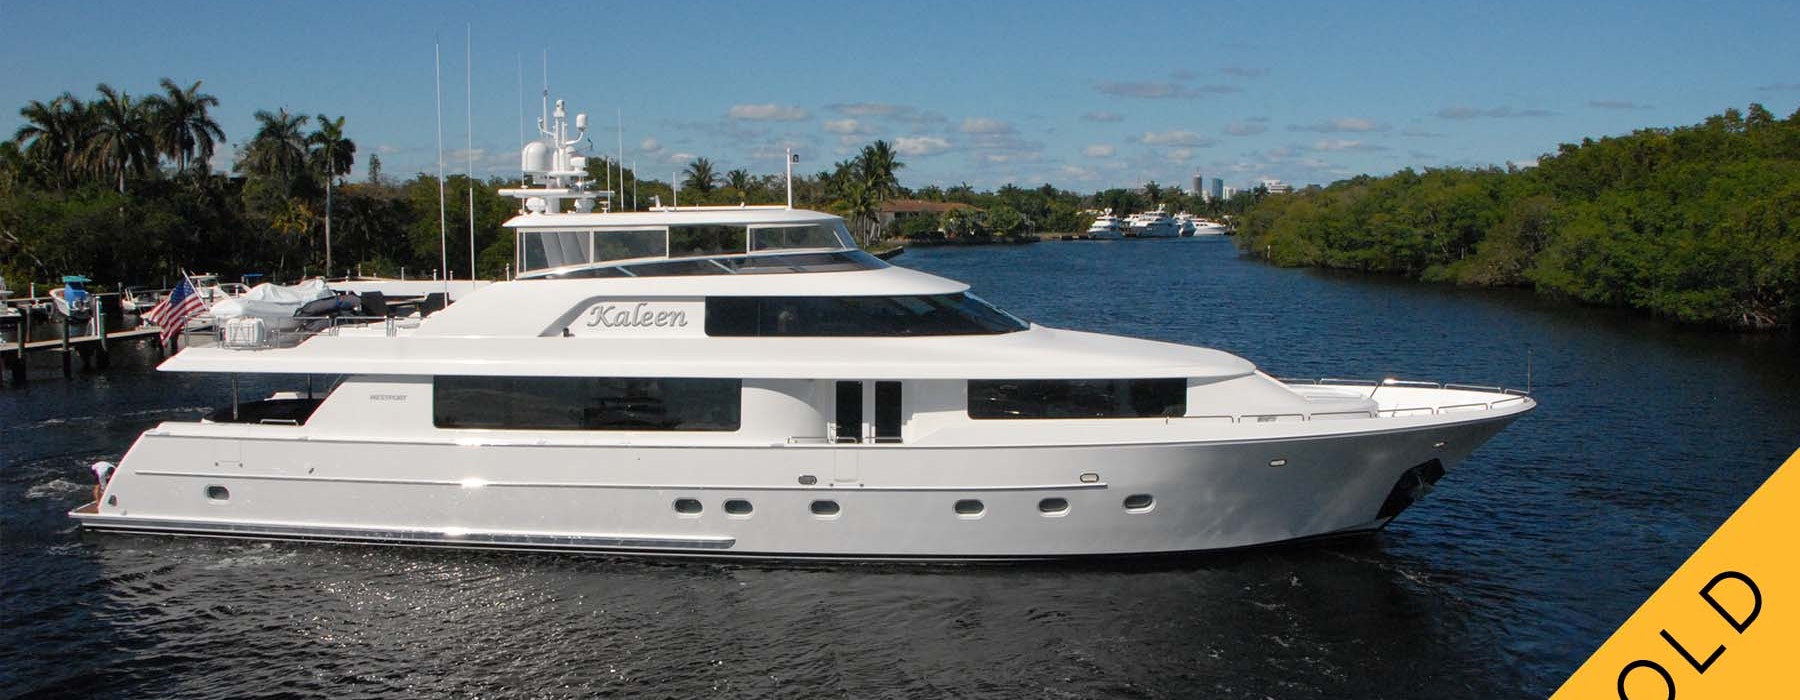 kaleen 112 westport yacht sold